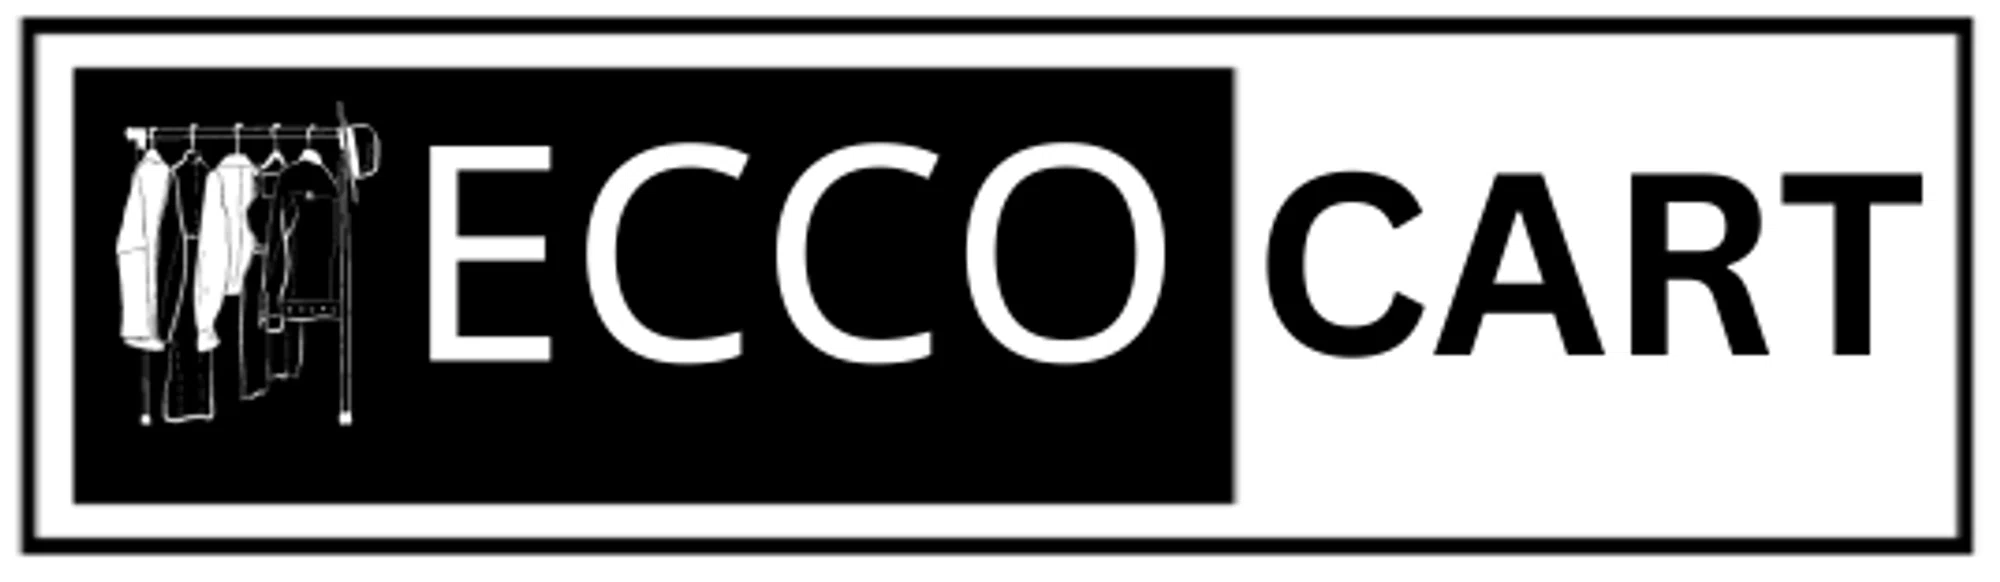 Eccocart